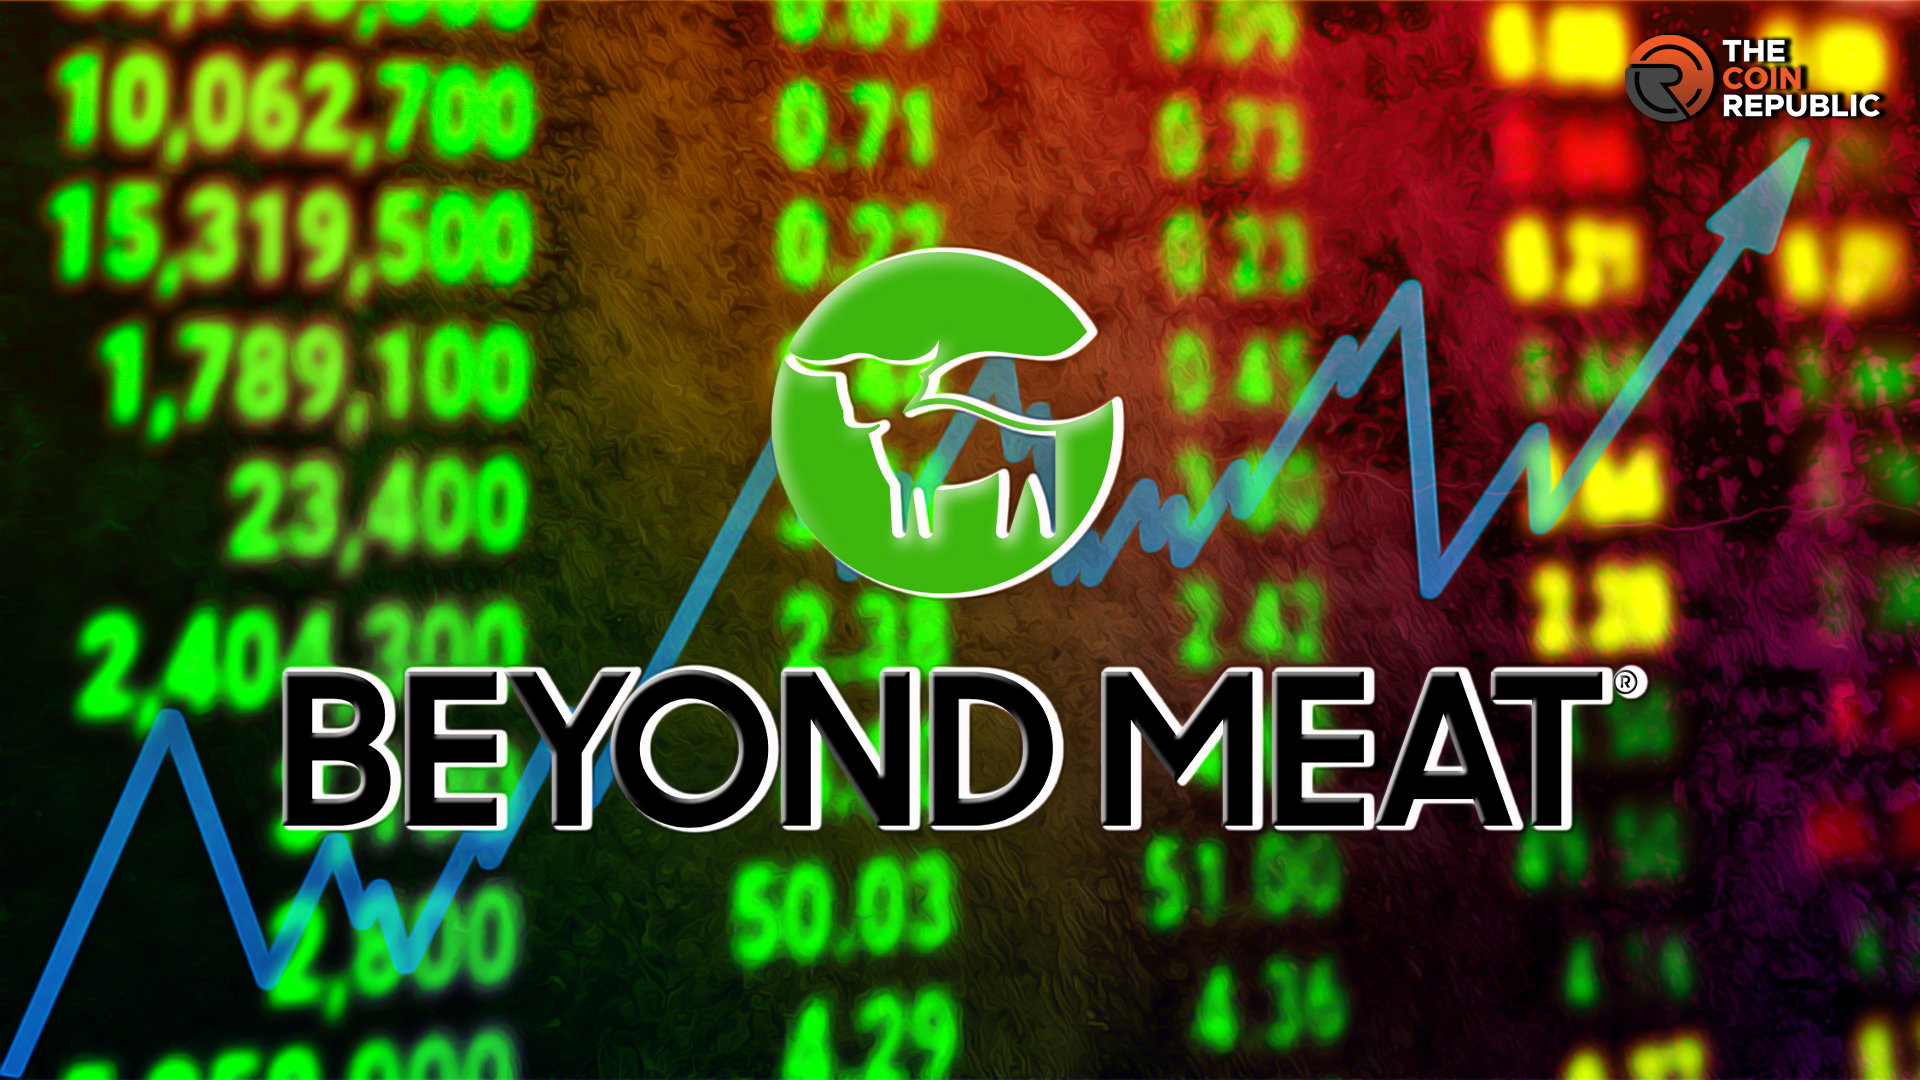 BYND Stock Price Below $10; Beyond Meat Stock Hit 52-Week Low